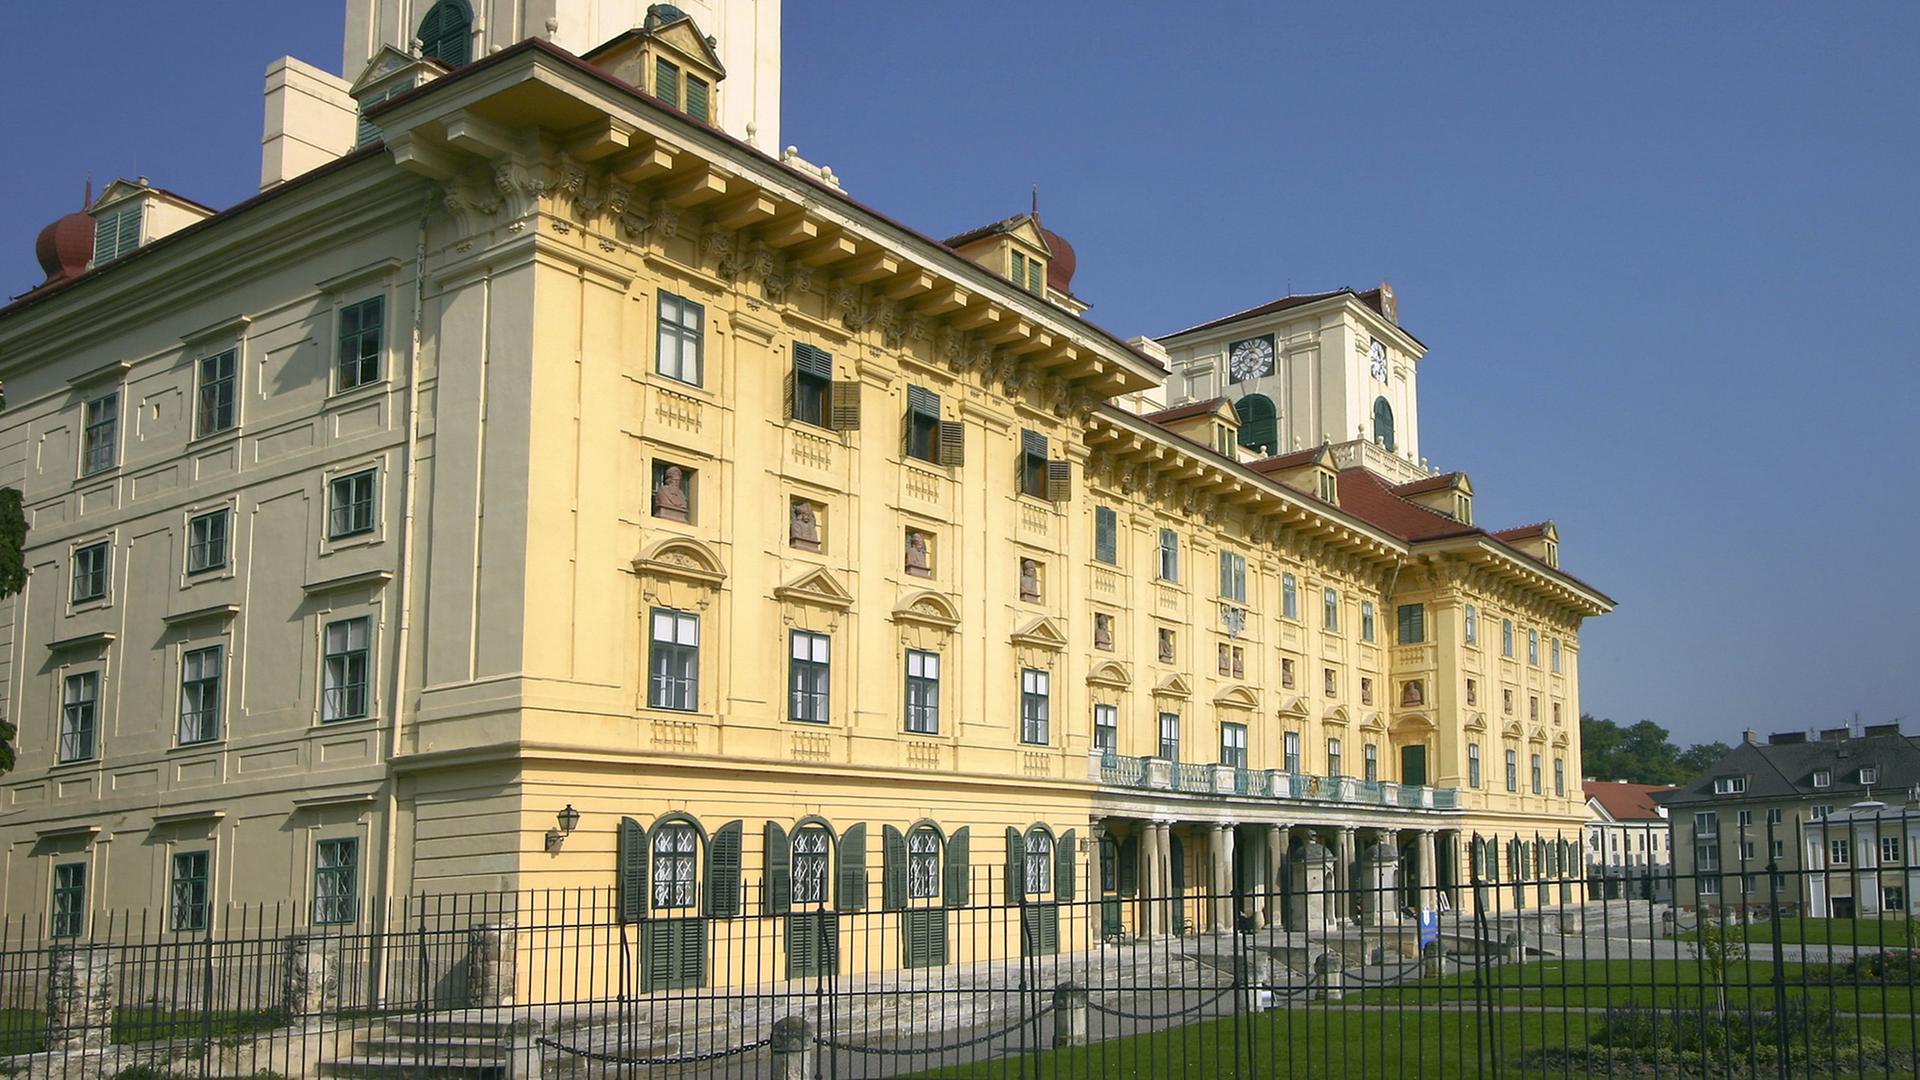 Die Hauptfront von Schloss Esterhazy in Eisenstadt im österreichischen Burgenland. Hier hat Joseph Haydn den größten Teil seiner mehr als 1000 Werke komponiert